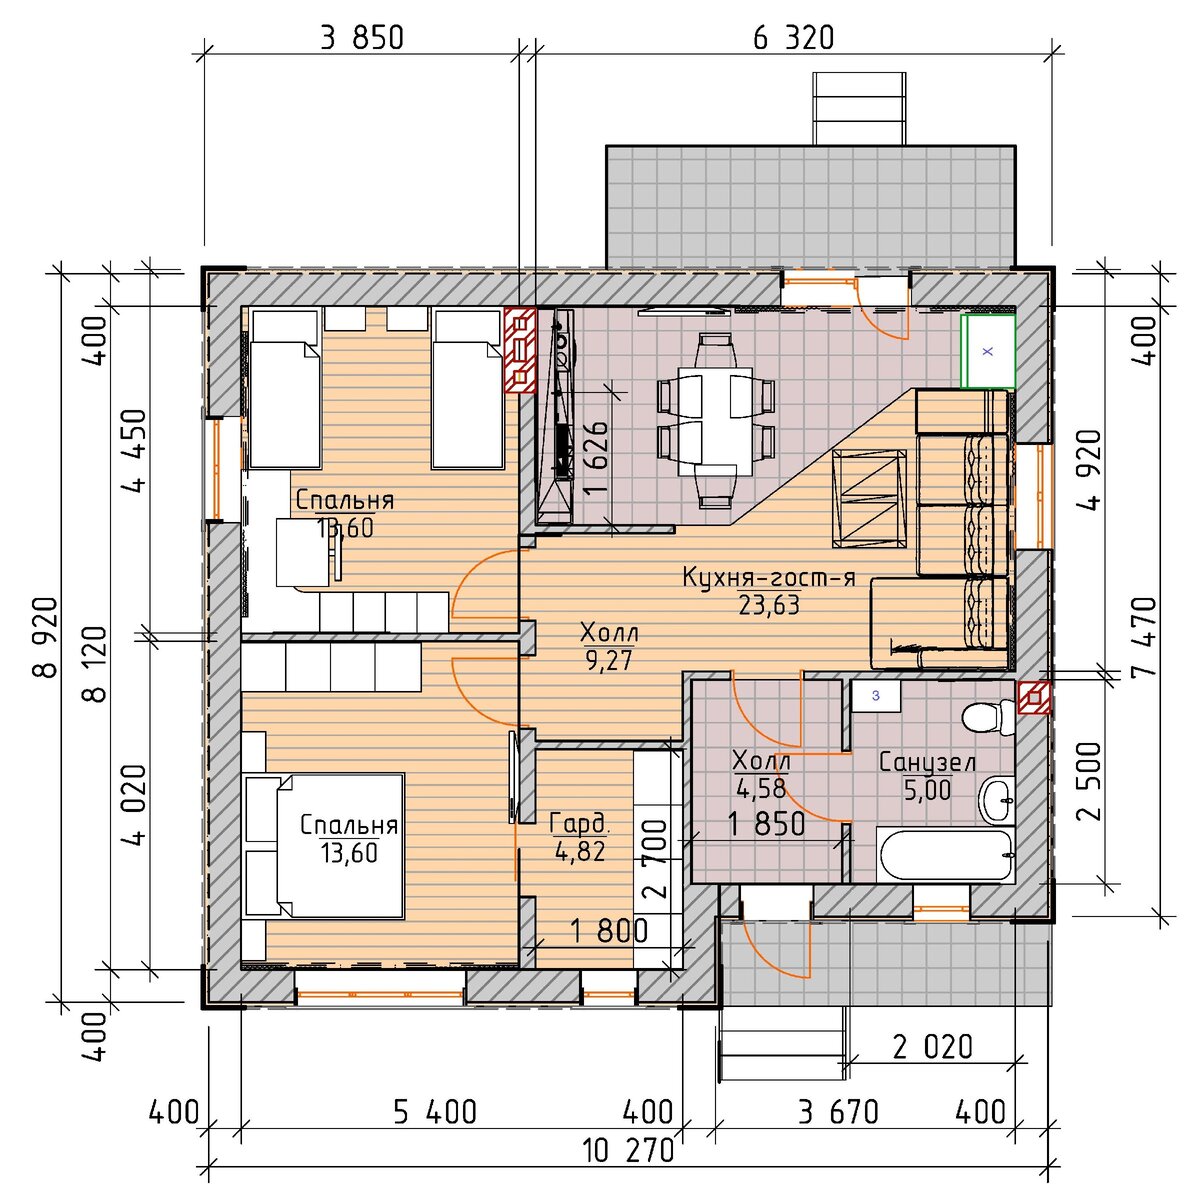 Простой, но уютный одноэтажный 3-х комнатный дом из газобетона площадью 70 м² (+ объем материалов) ??